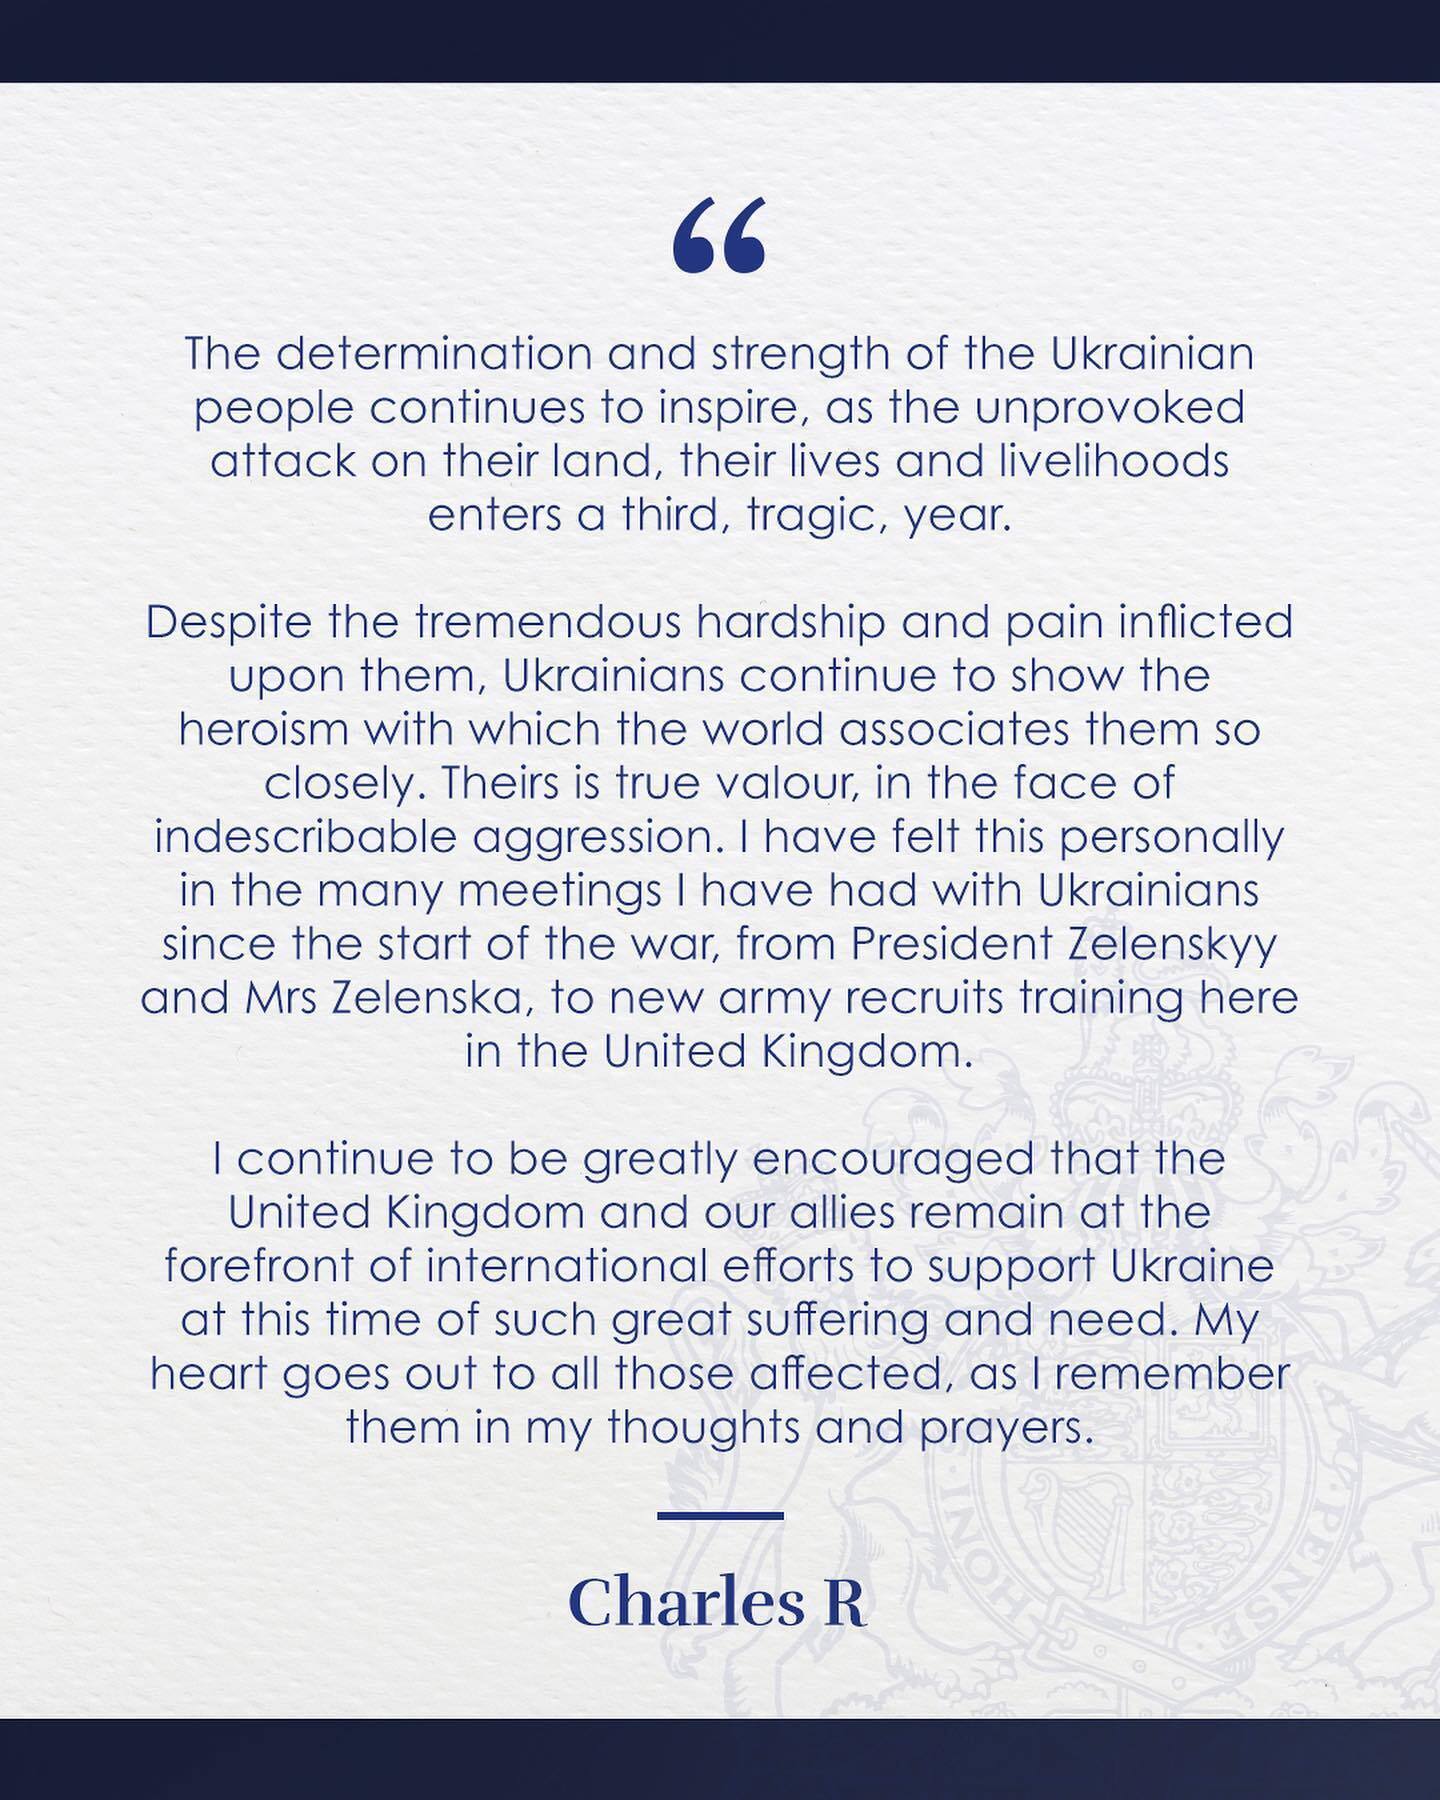 Король Чарльз III обратился к украинцам во вторую годовщину большой войны: это настоящая доблесть перед лицом невыразимой агрессии